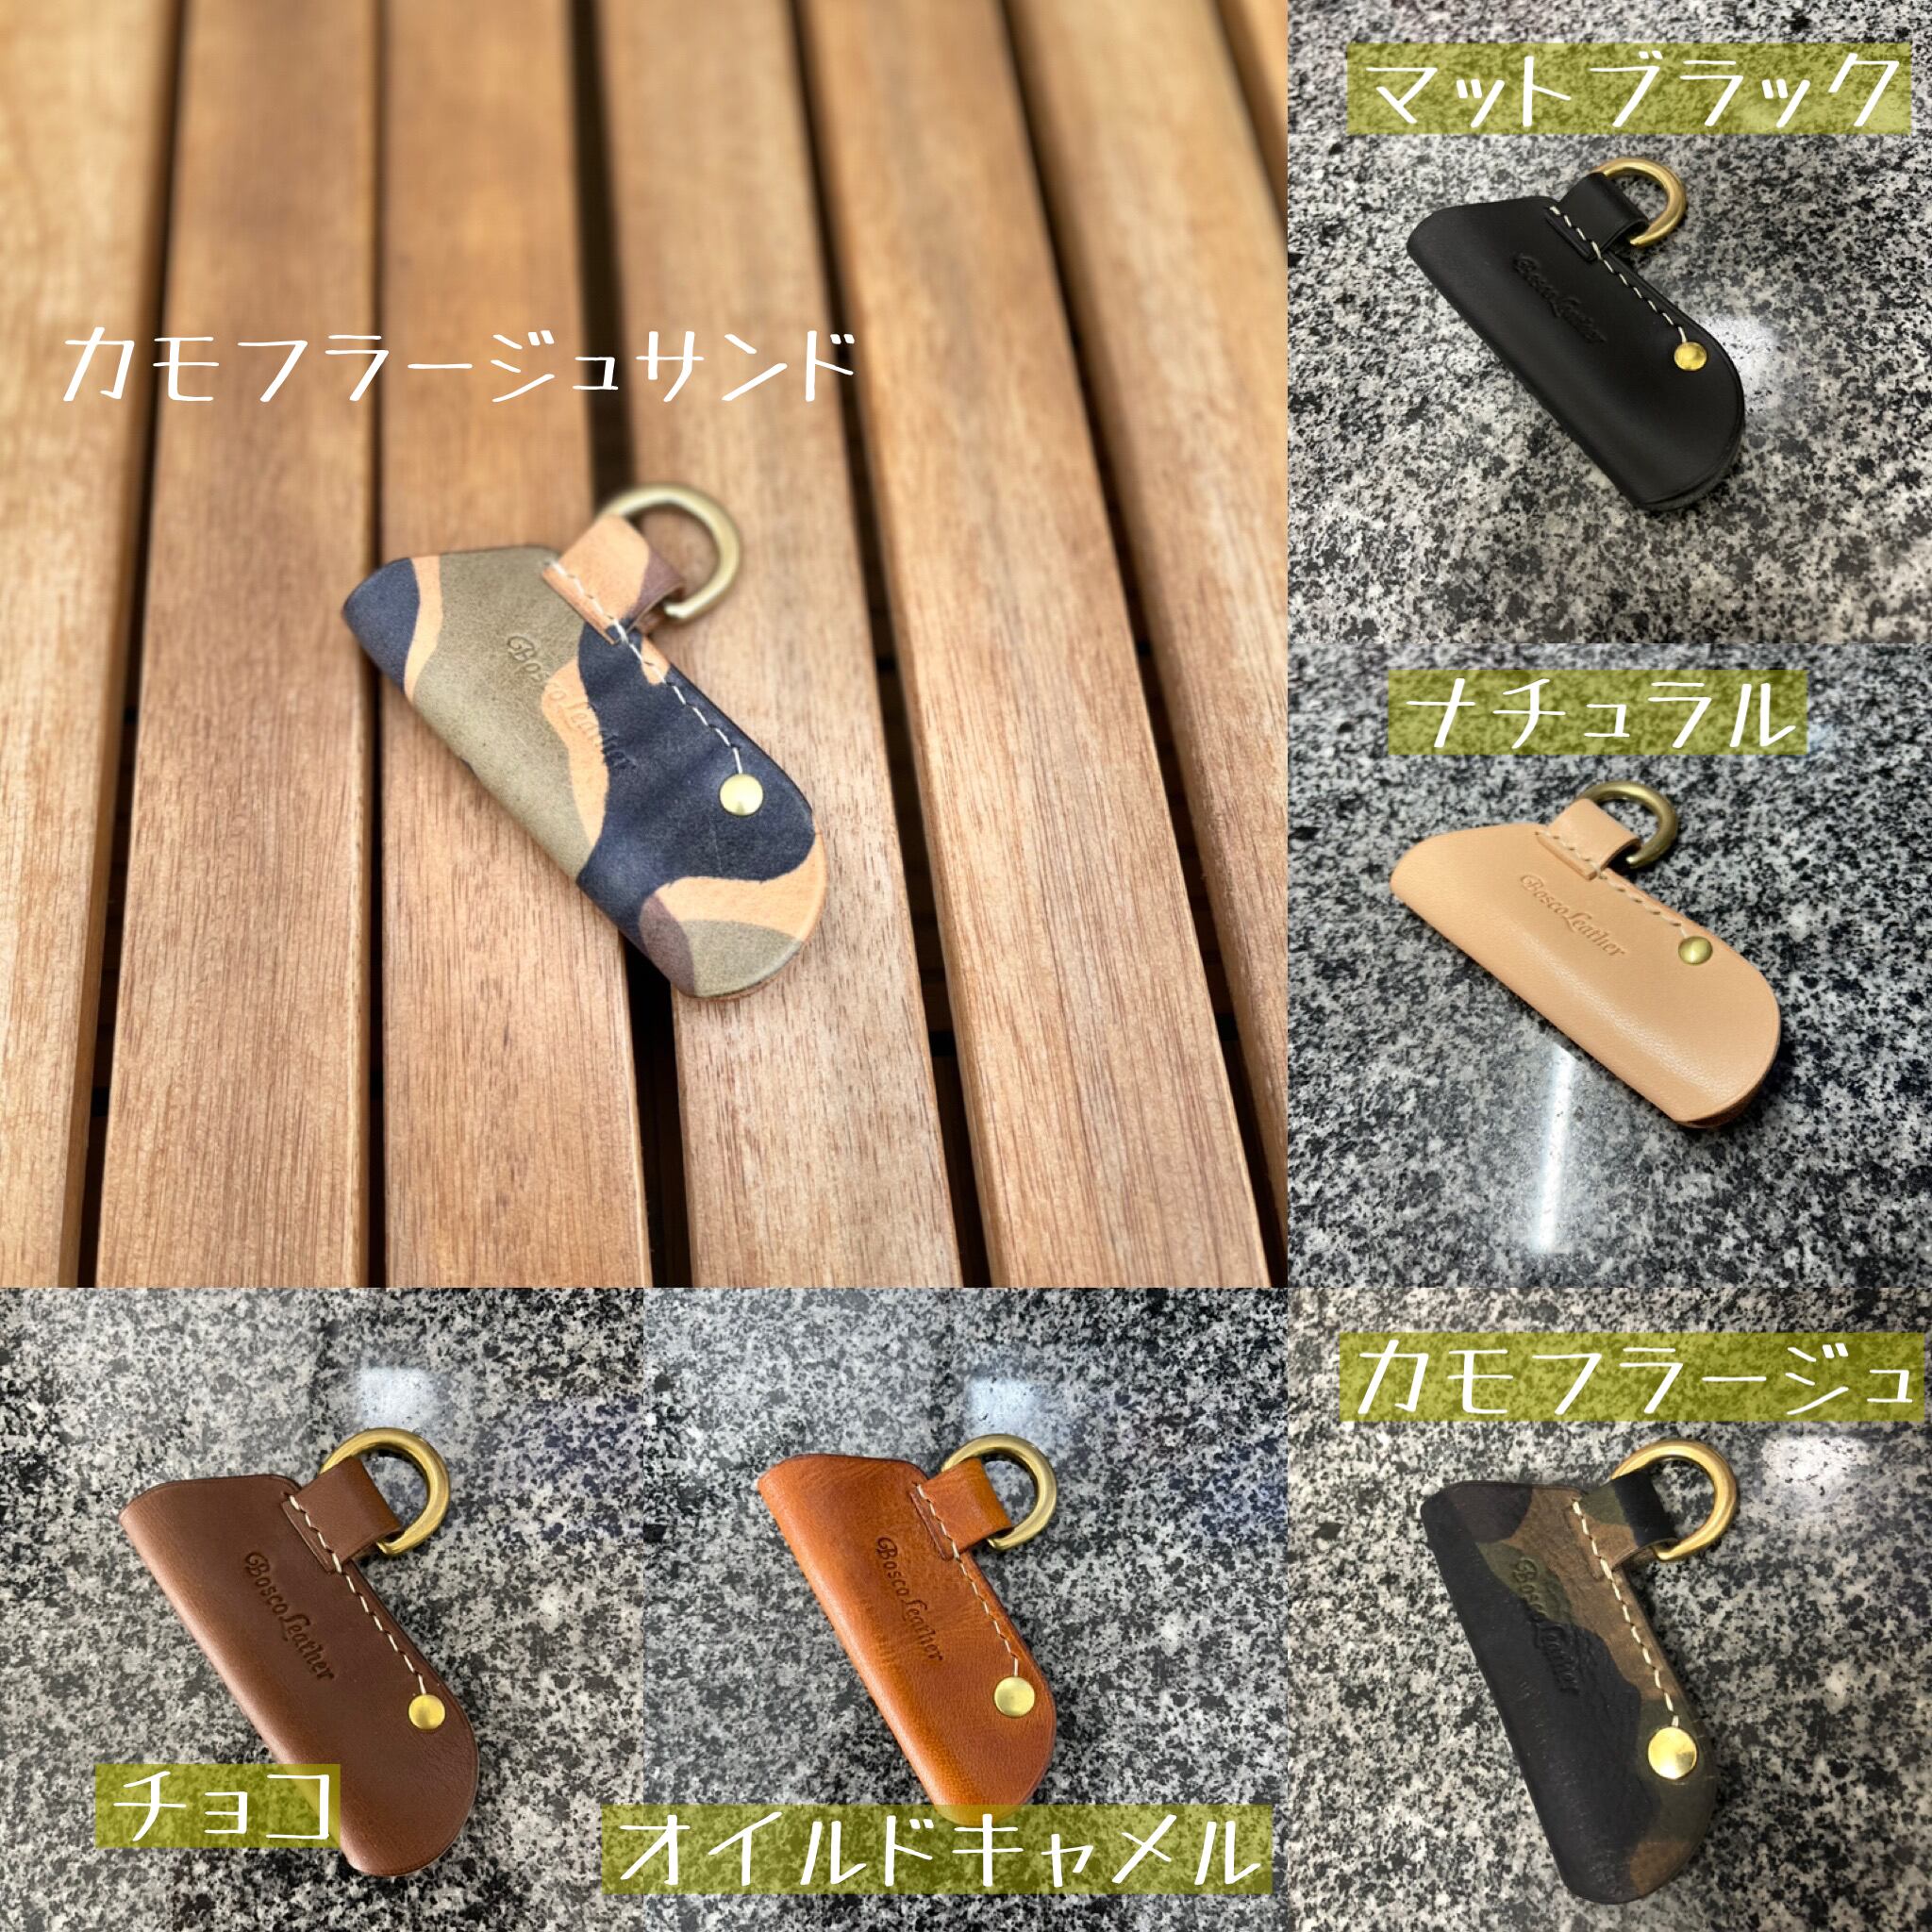 武井バーナーパープルストーブ専用本革ハンドルホルダー | Bosco leather